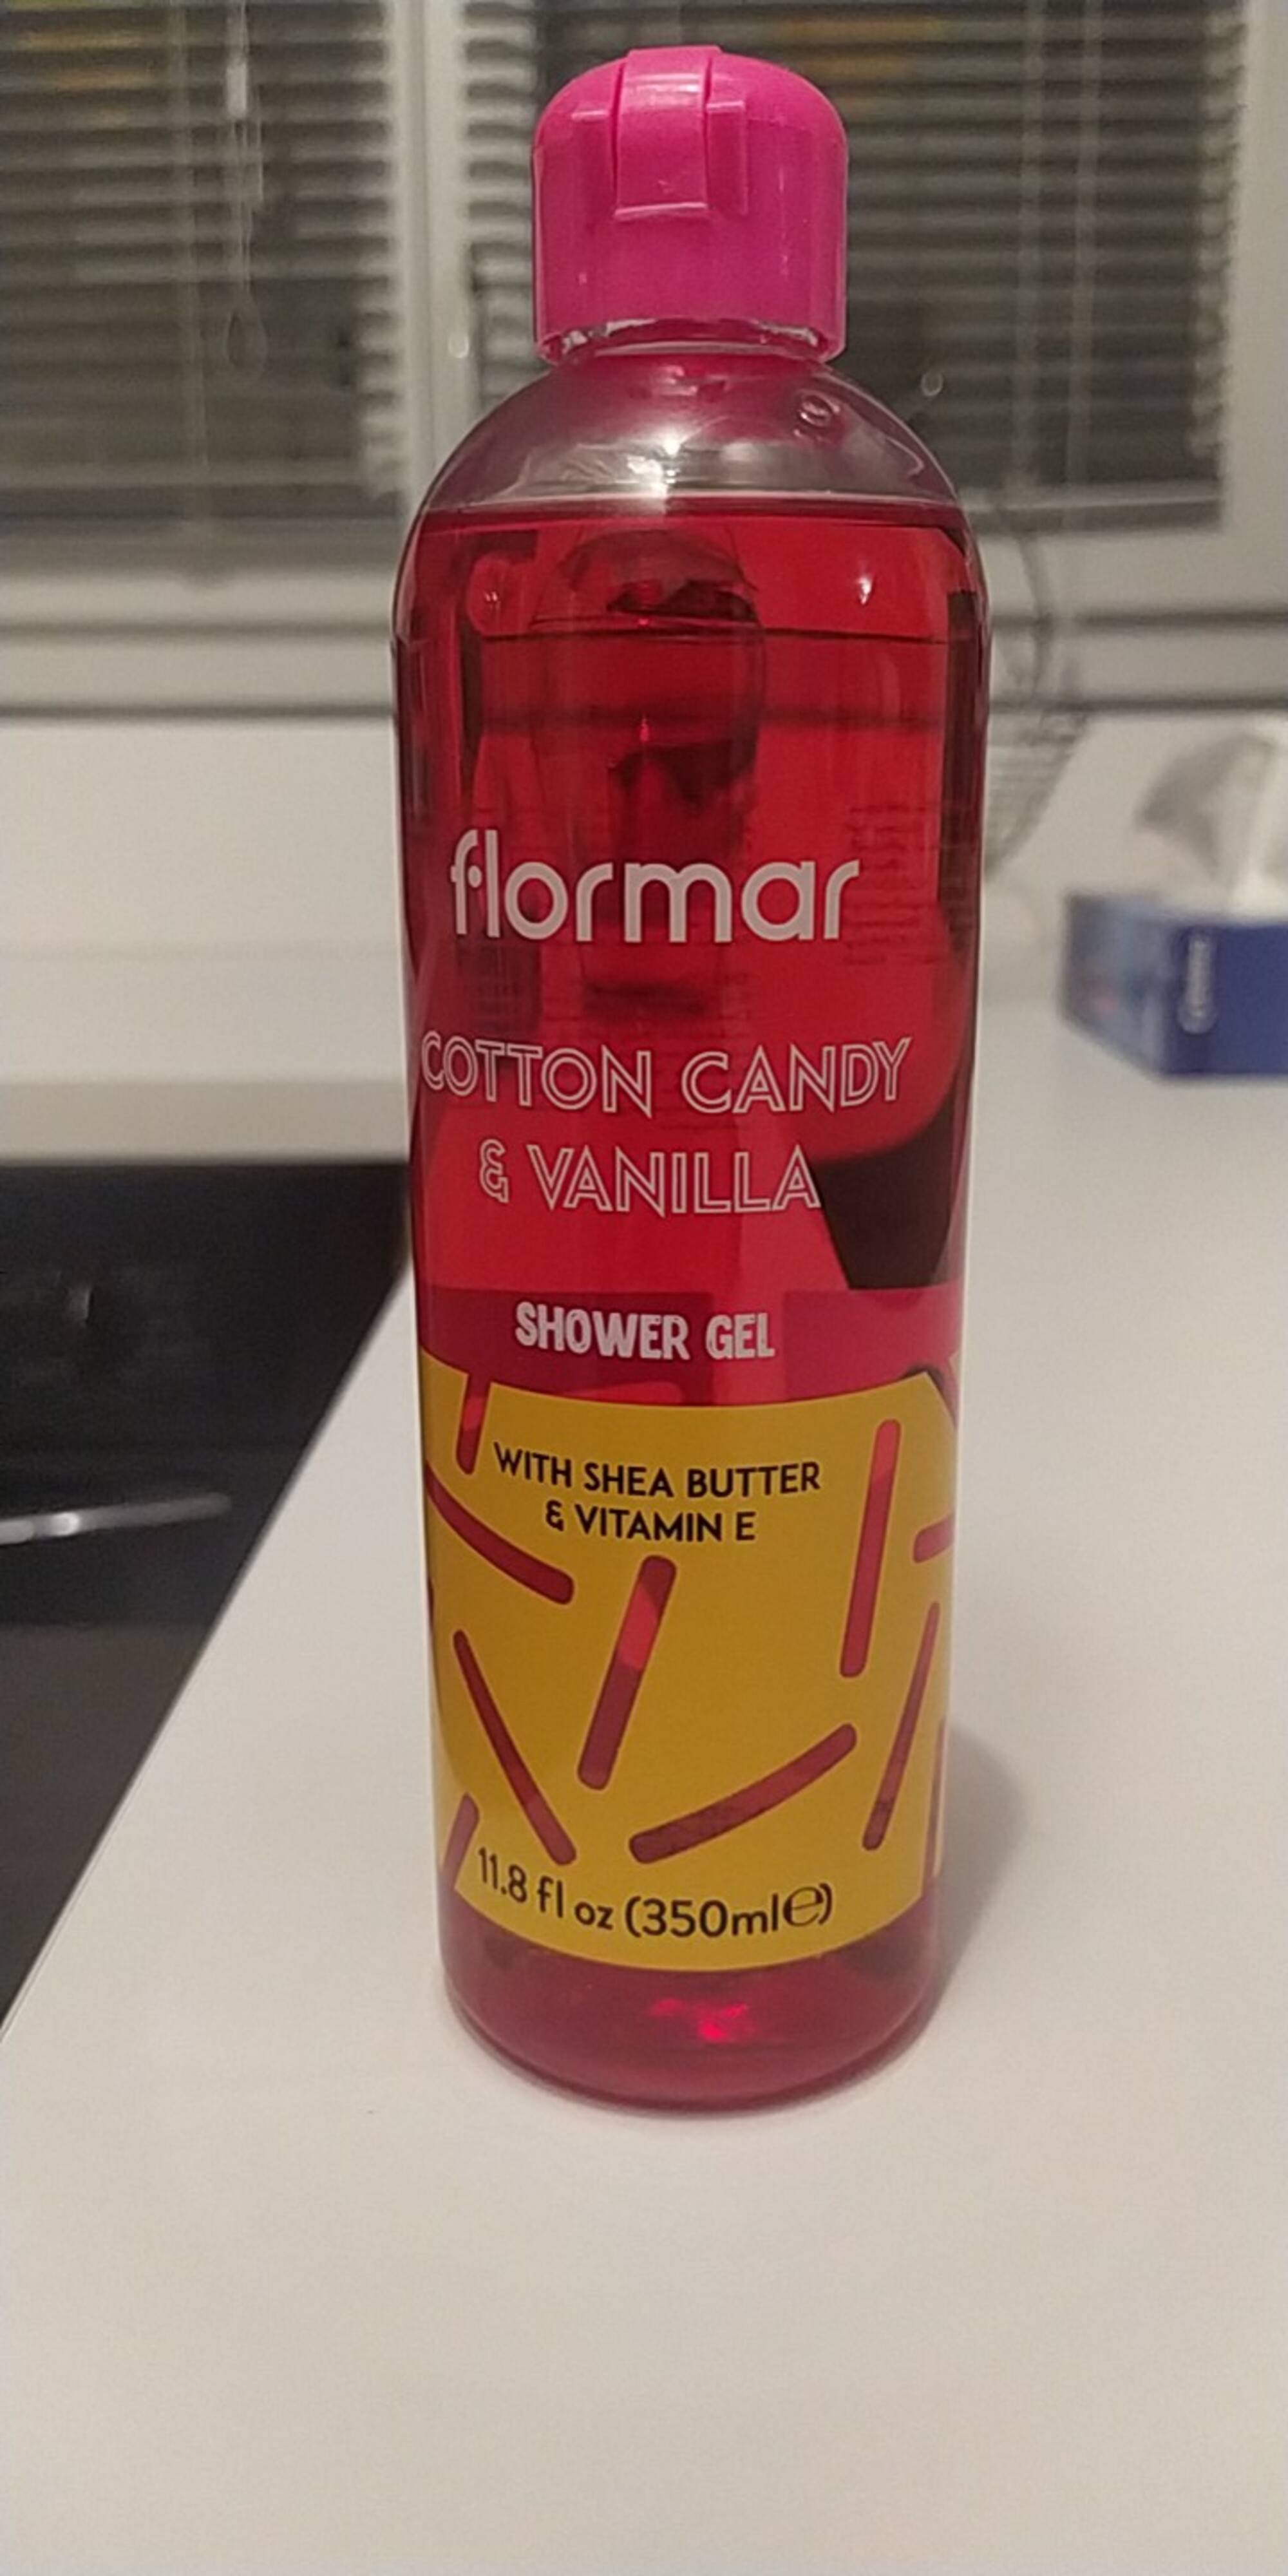 FLORMAR - Cotton candy & Vanilla - Shower gel